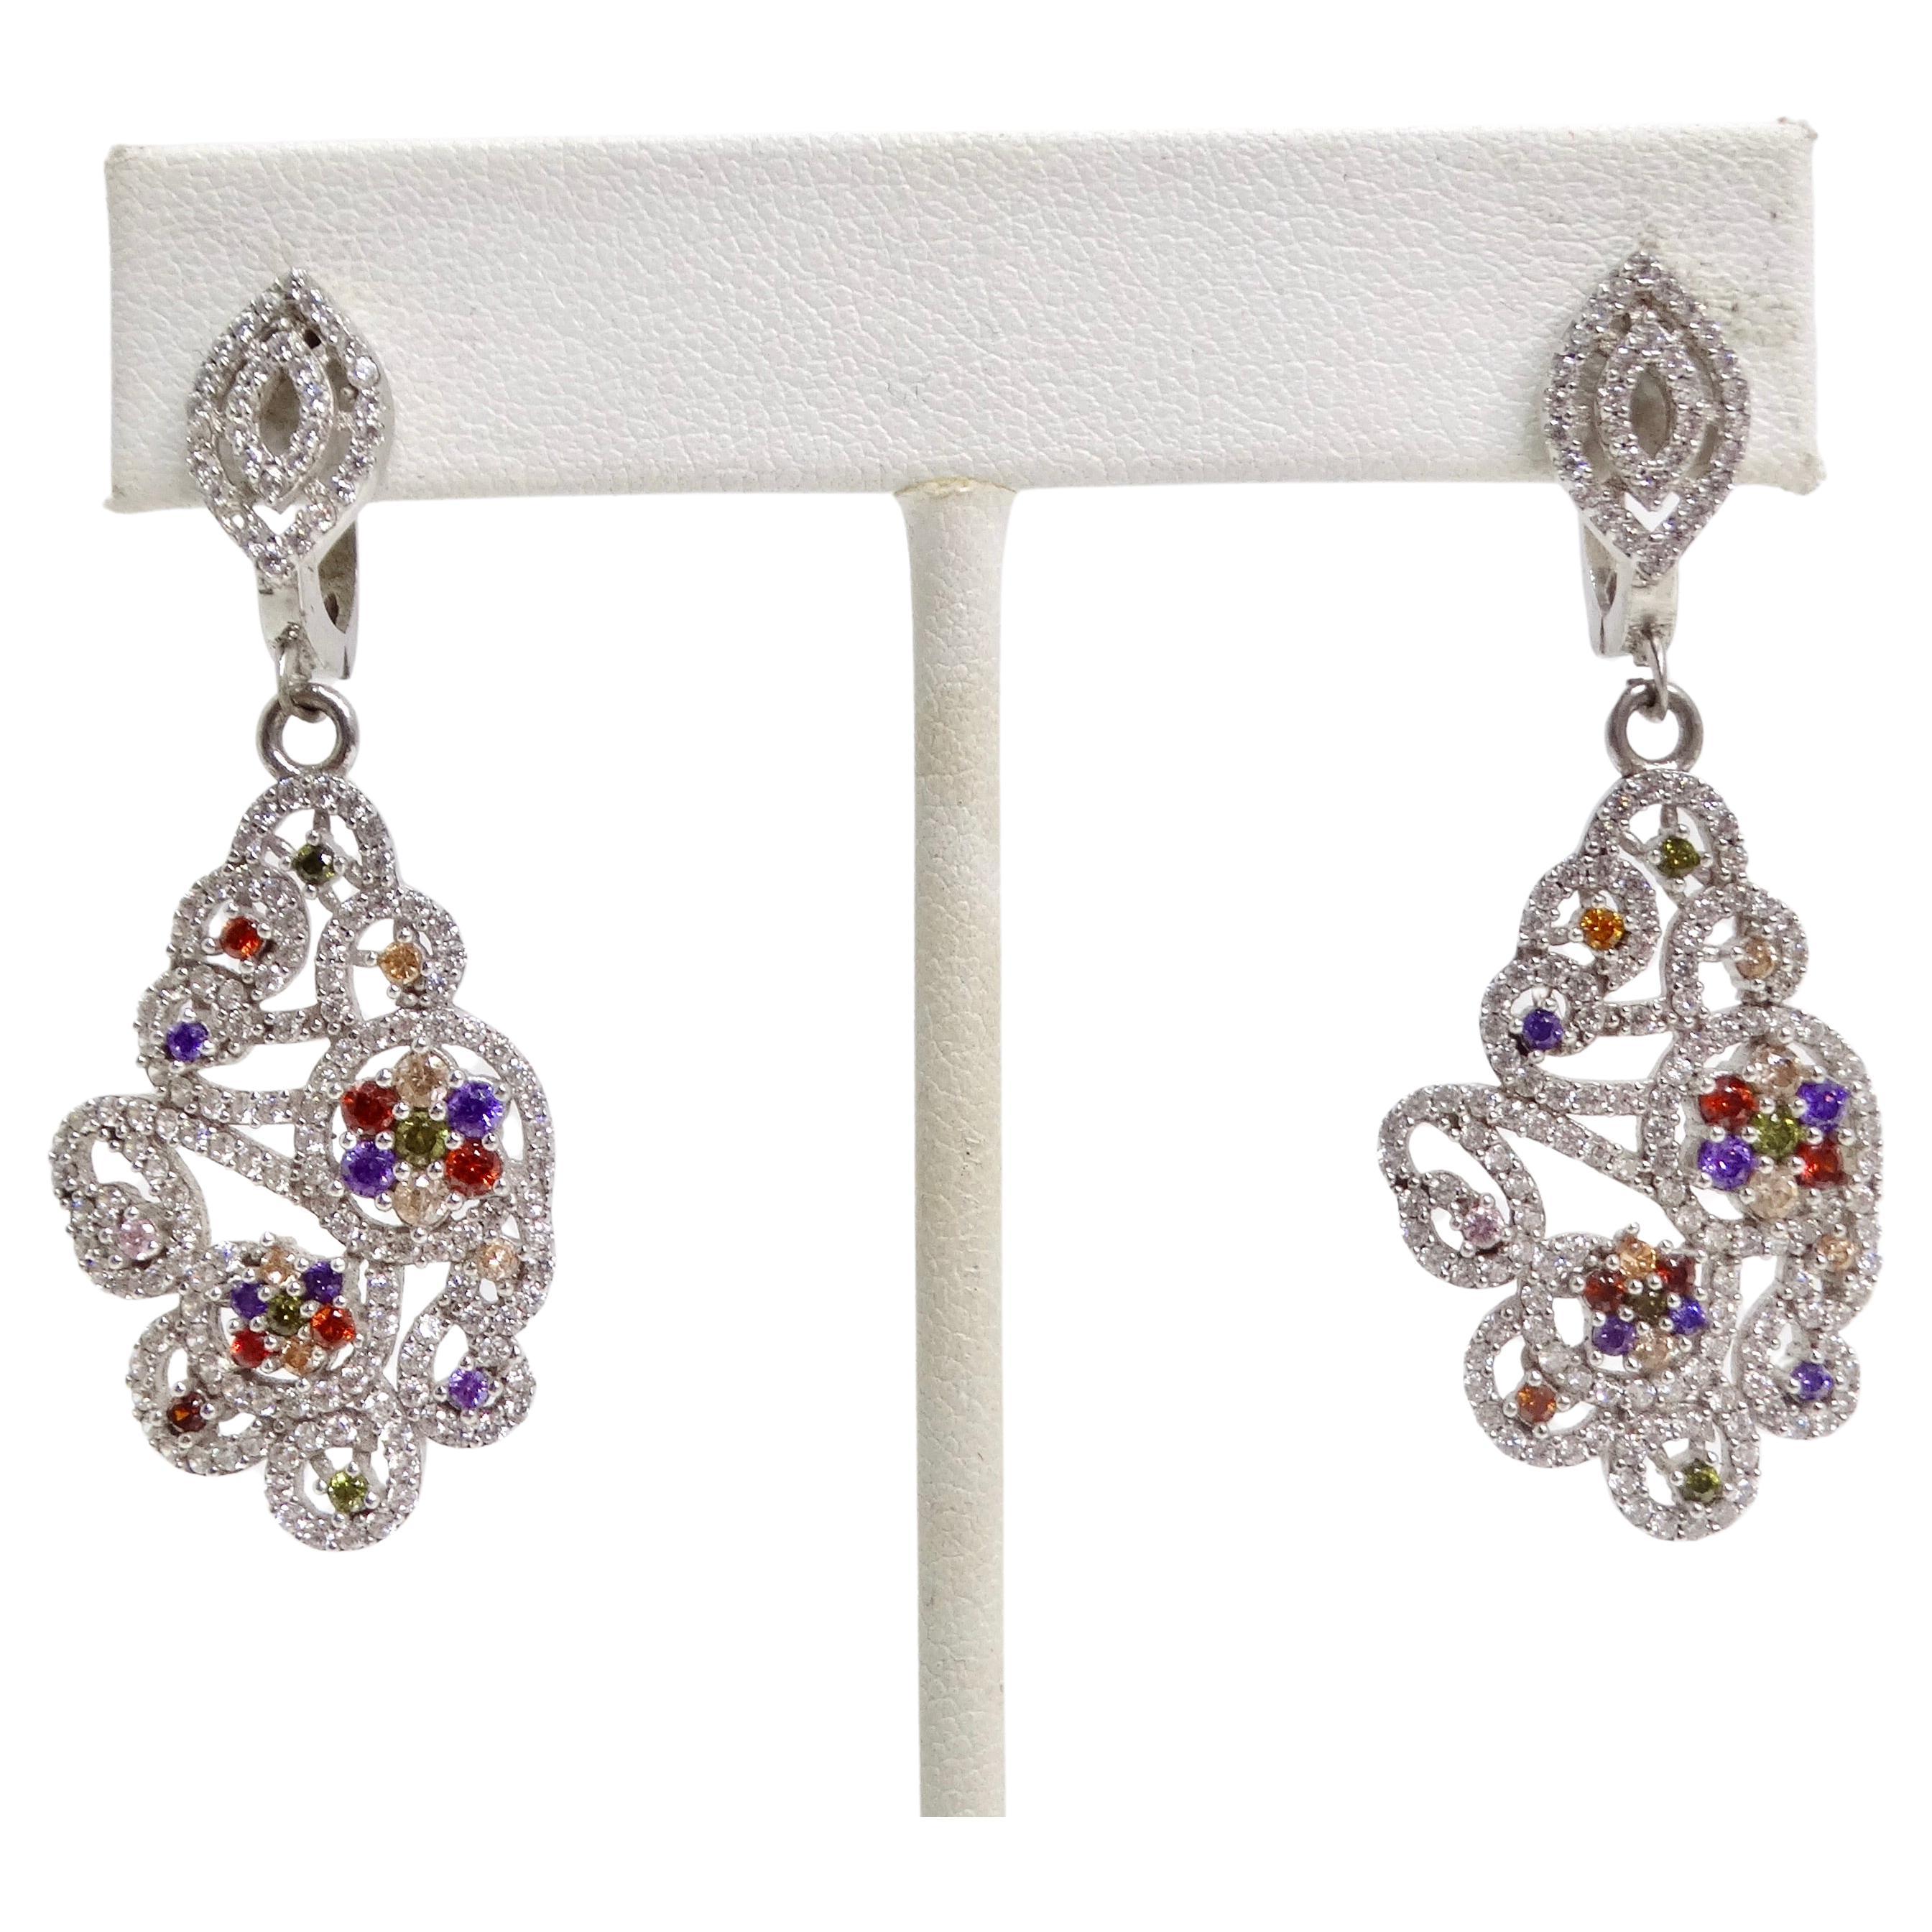 Schmücken Sie sich mit dem fesselnden Charme der 1990s Multicolor Swarovski Crystal Dangle Earrings. Diese atemberaubenden Ohrringe sind ein Beweis für die perfekte Verbindung von klassischem Glamour und lebendiger Raffinesse. Die Ohrringe sind mit